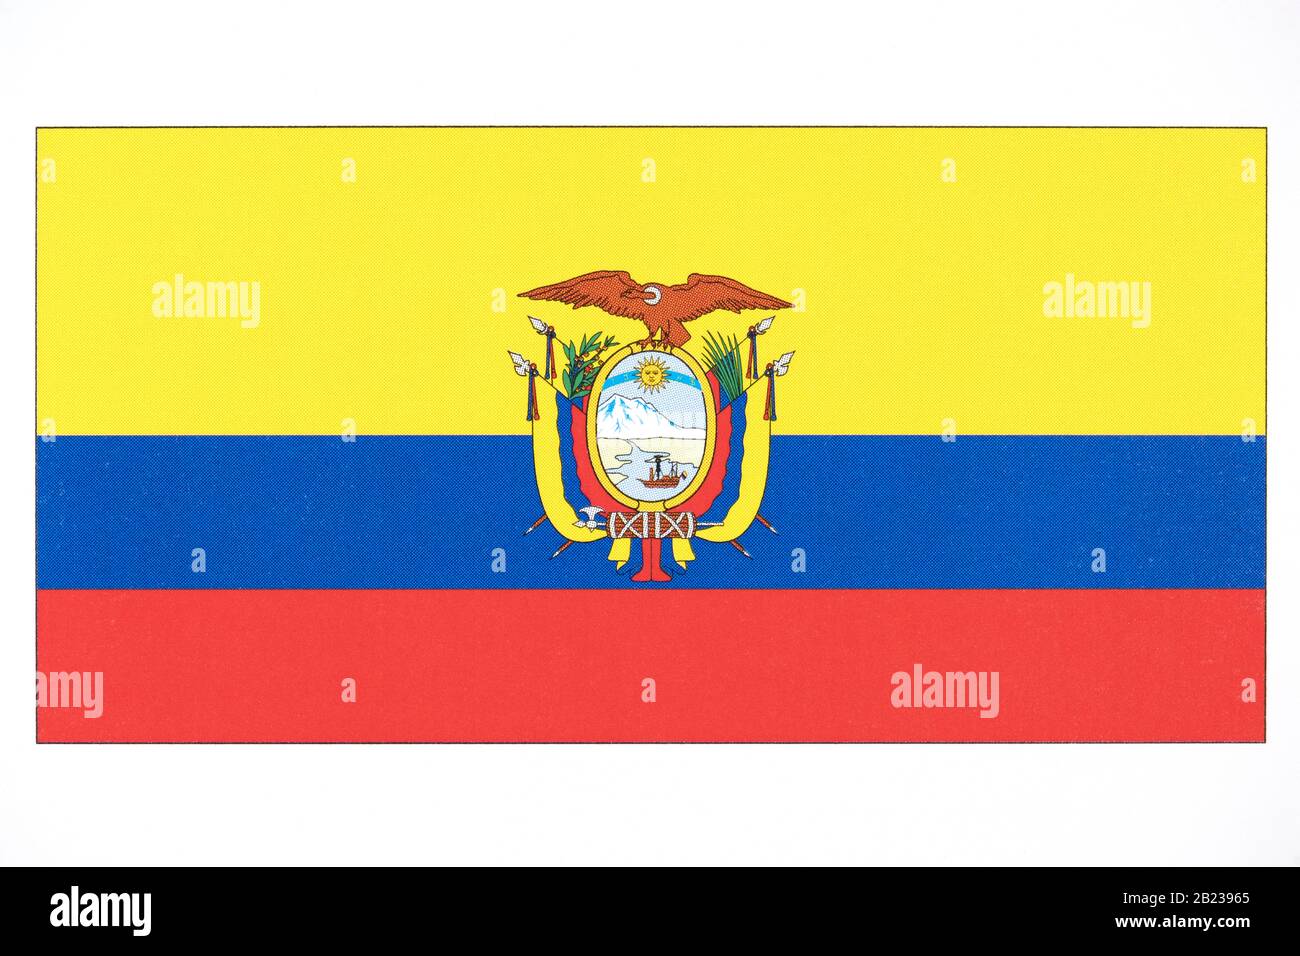 National flag of Equador. Stock Photo